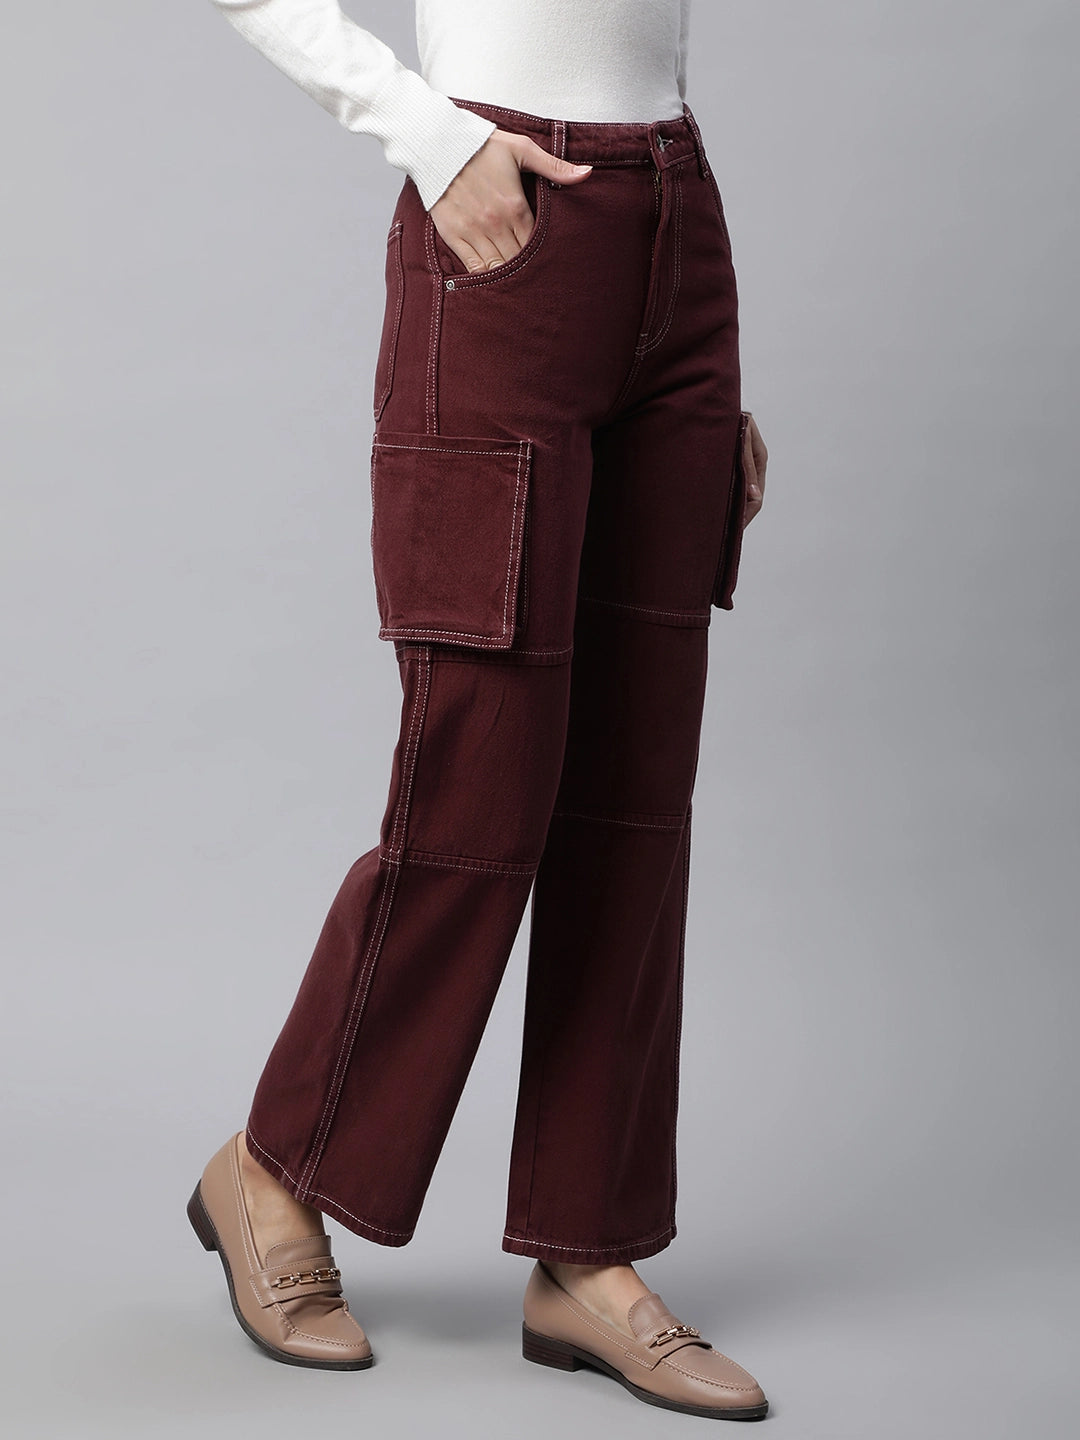 Wine Colored Blouse - Pants Set | Gizia Wholesale